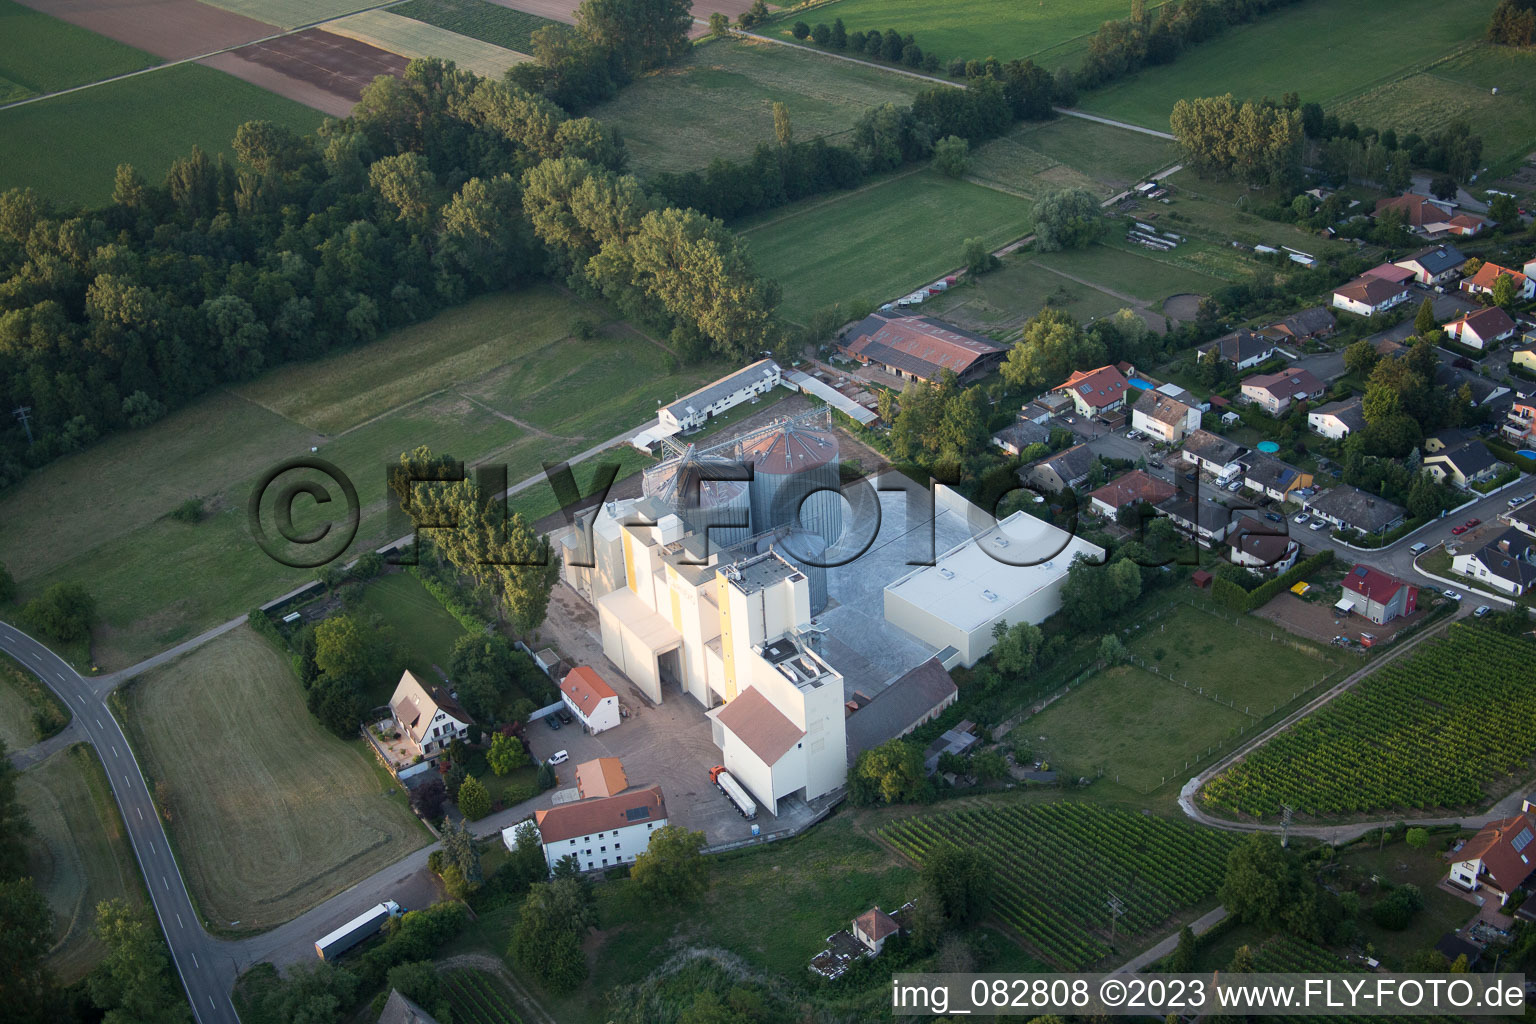 Freimersheim im Bundesland Rheinland-Pfalz, Deutschland aus der Luft betrachtet